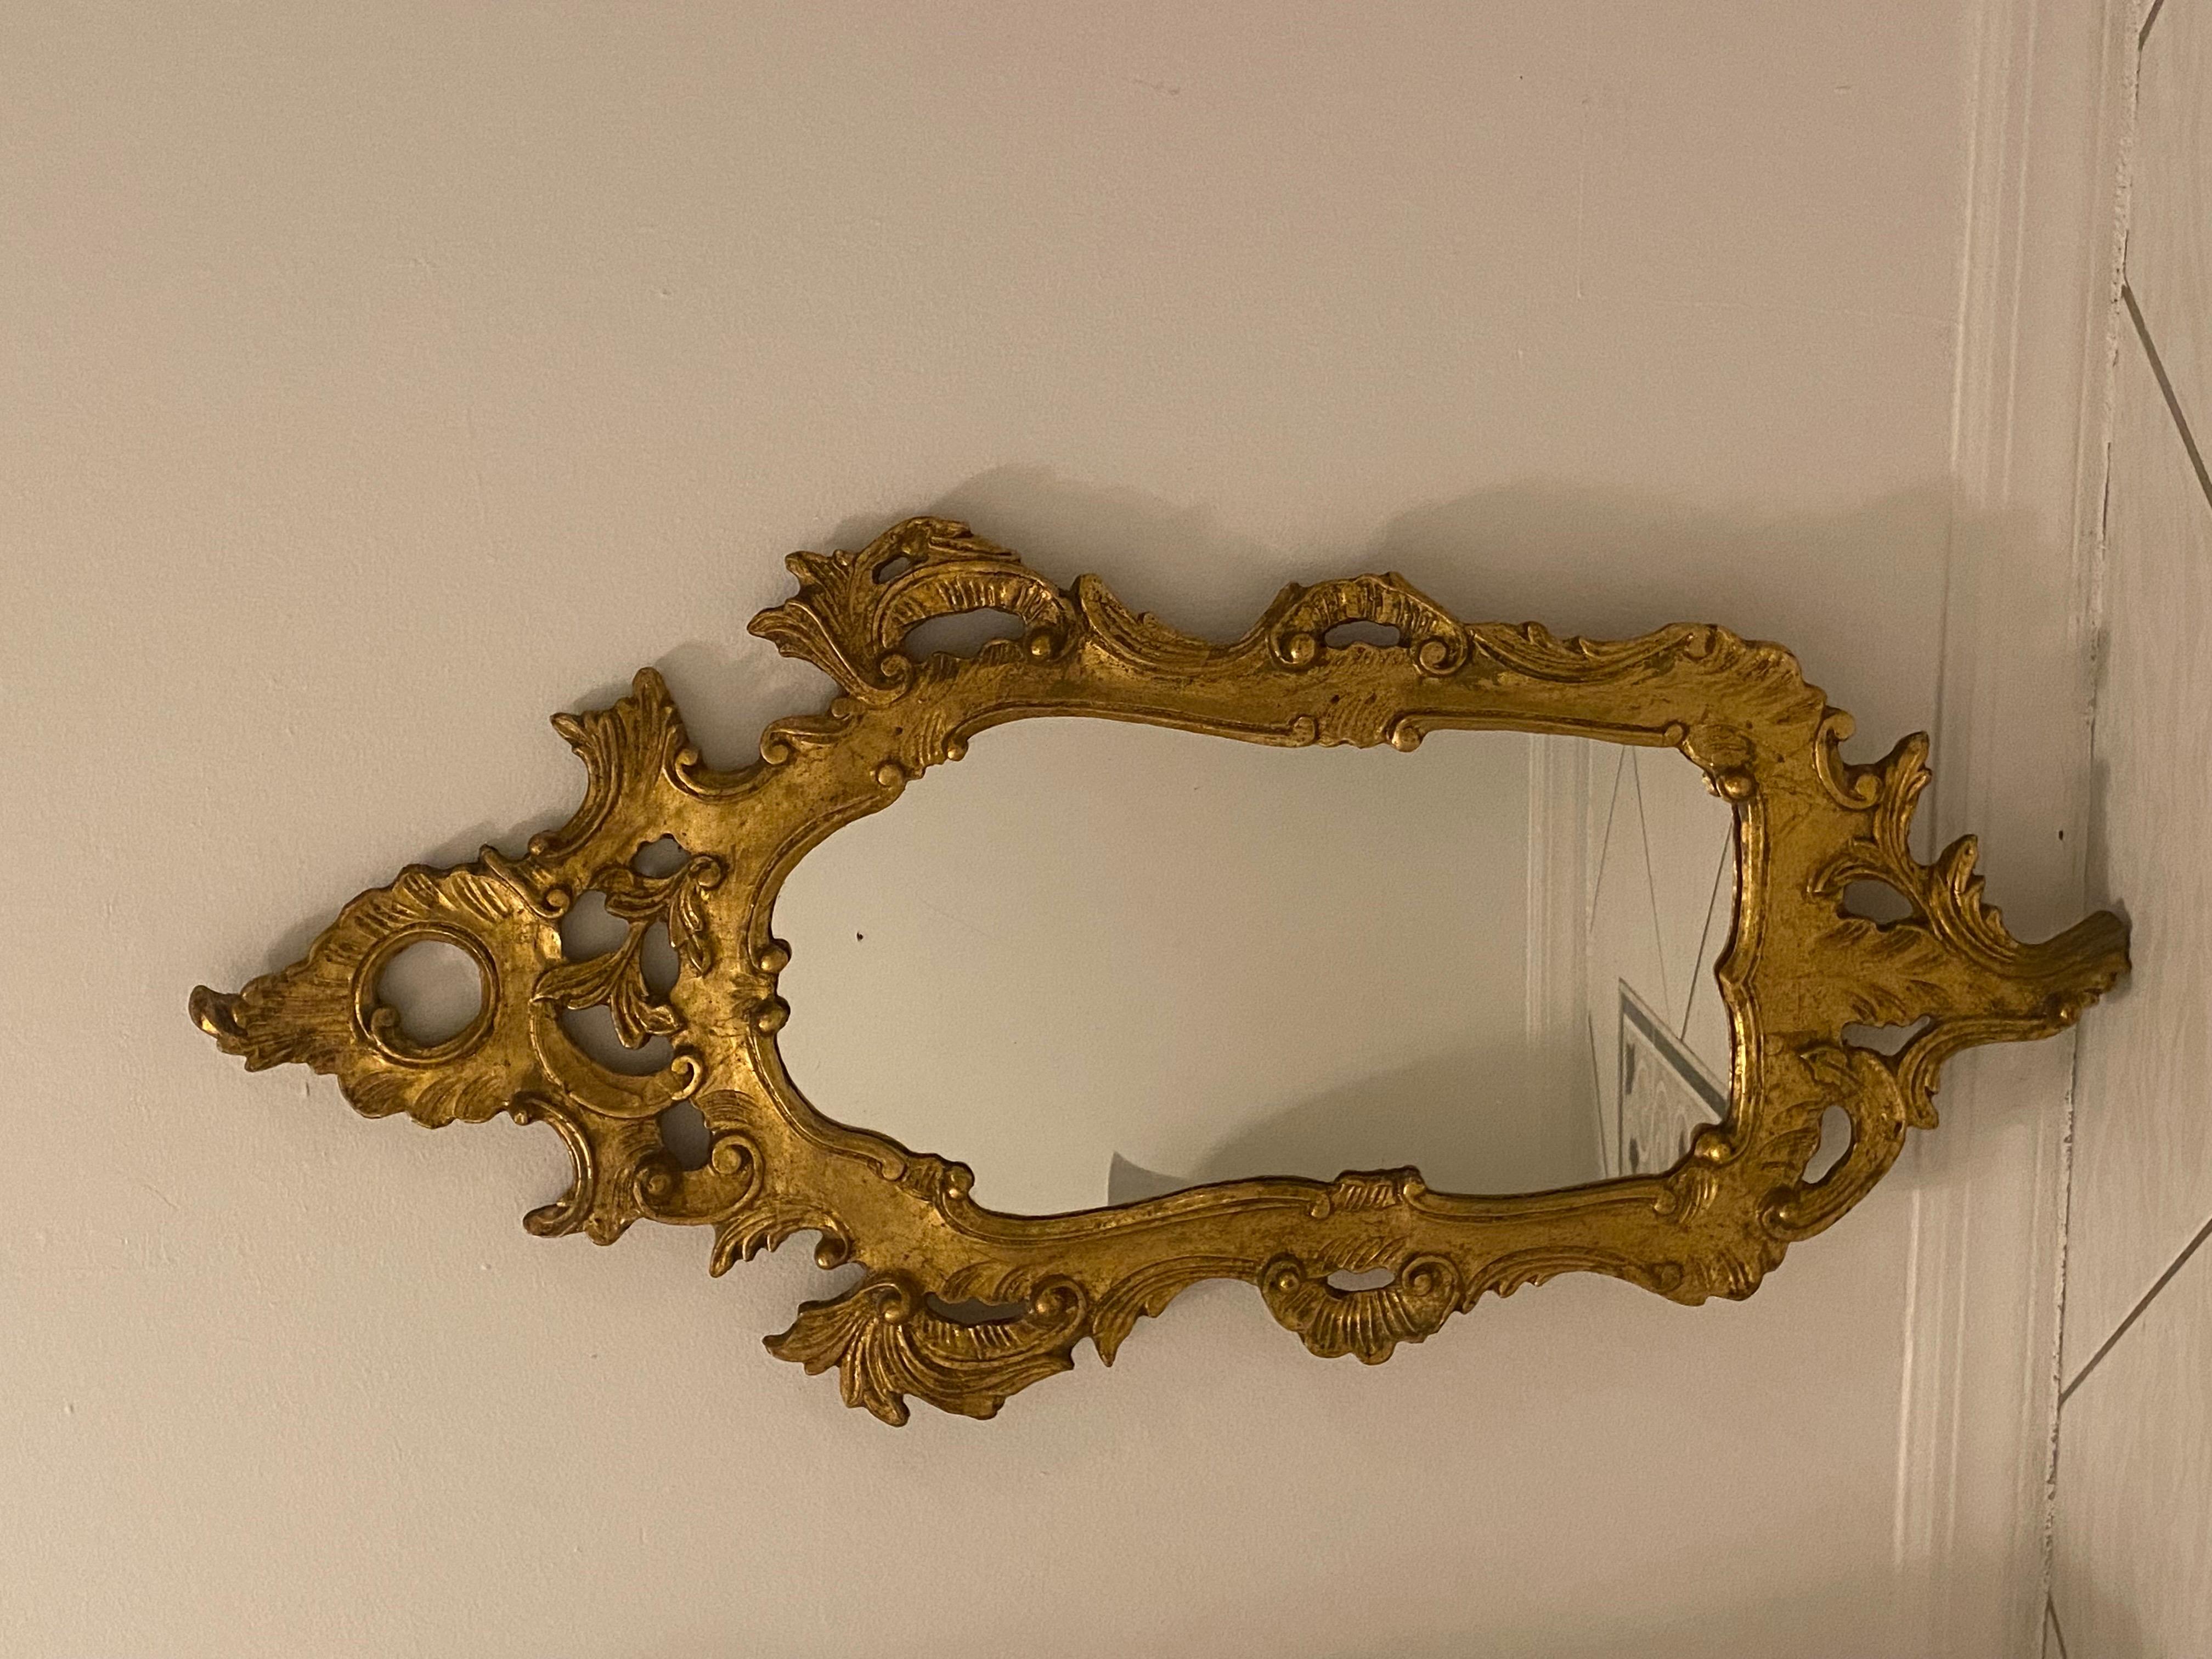 Ce magnifique miroir ancien de style rococo est fait de bois doré sculpté avec des motifs ornementaux en forme de Branch dans un C.I.C. et des motifs et des volutes de forme circulaire. 

La pièce est en excellent état Vintage.

Italie, années